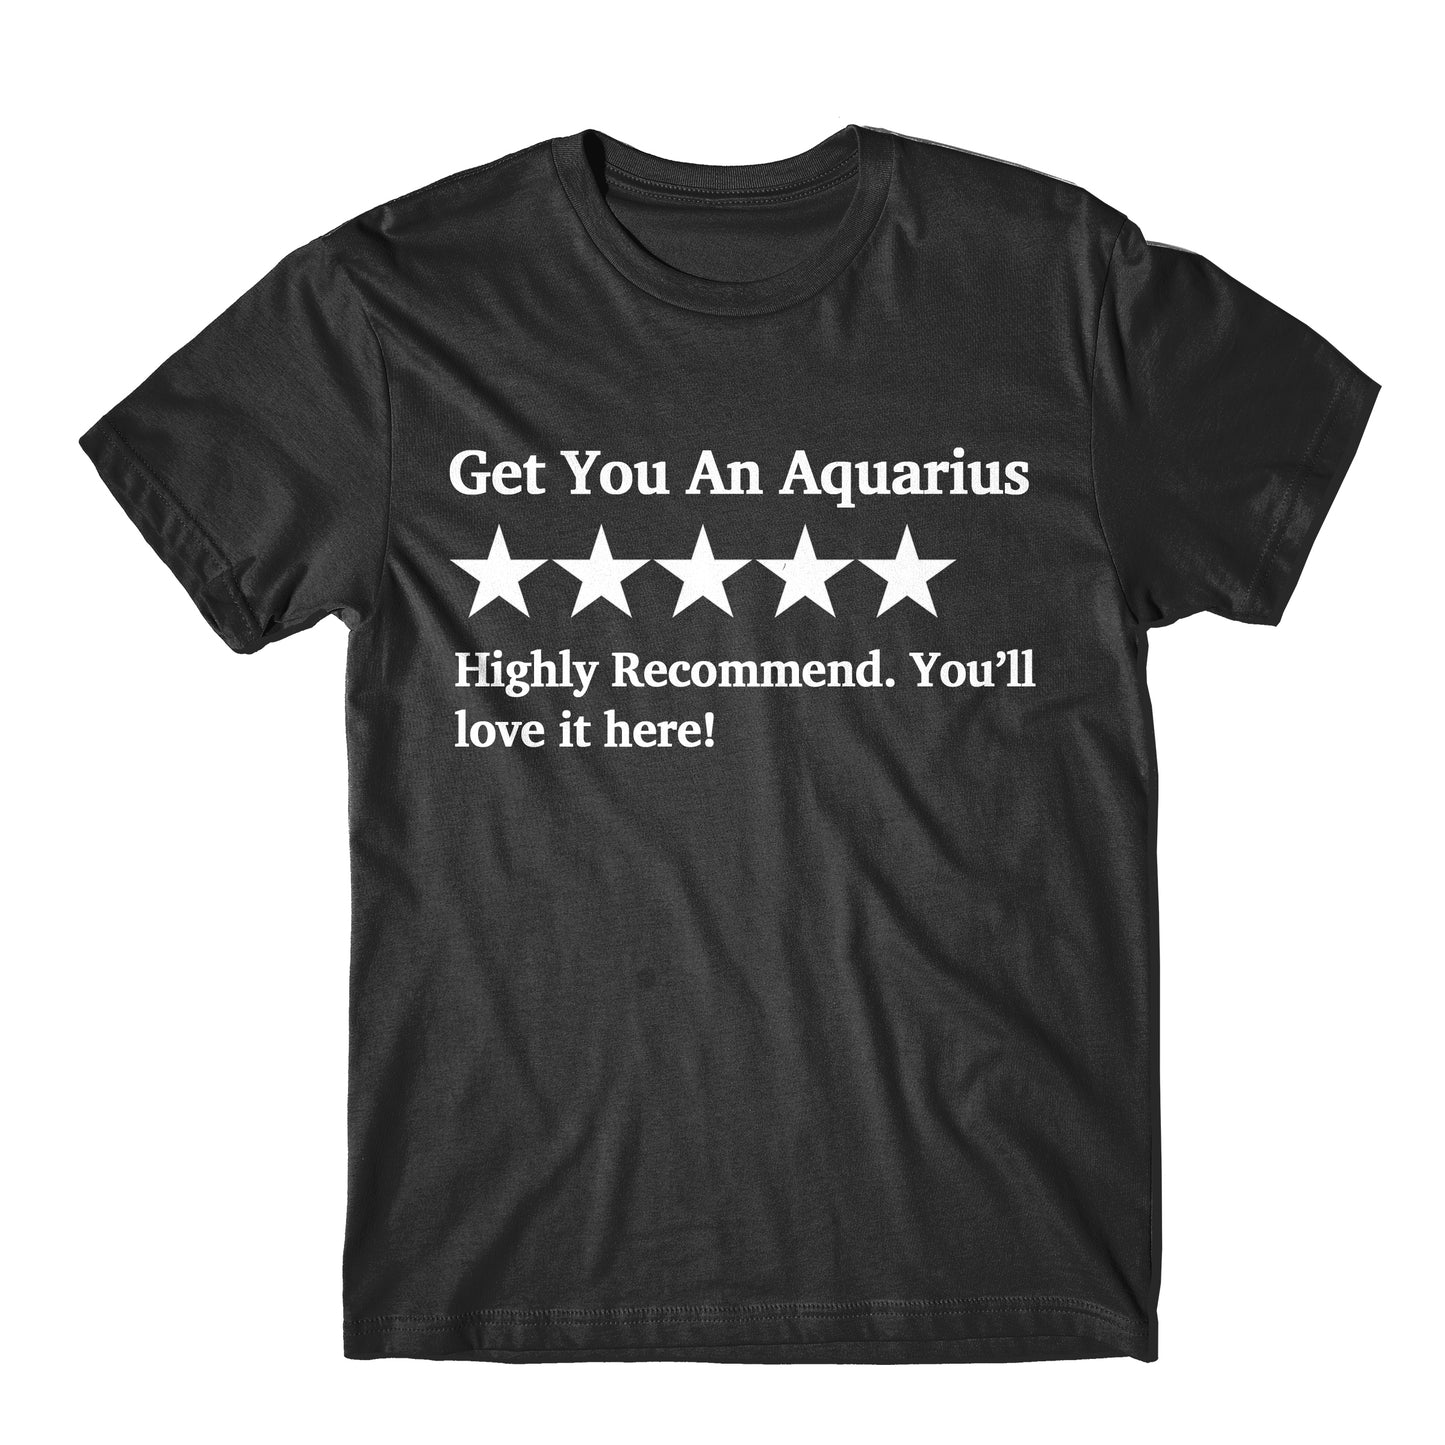 "Get You An Aquarius Five Star Rating" Tee